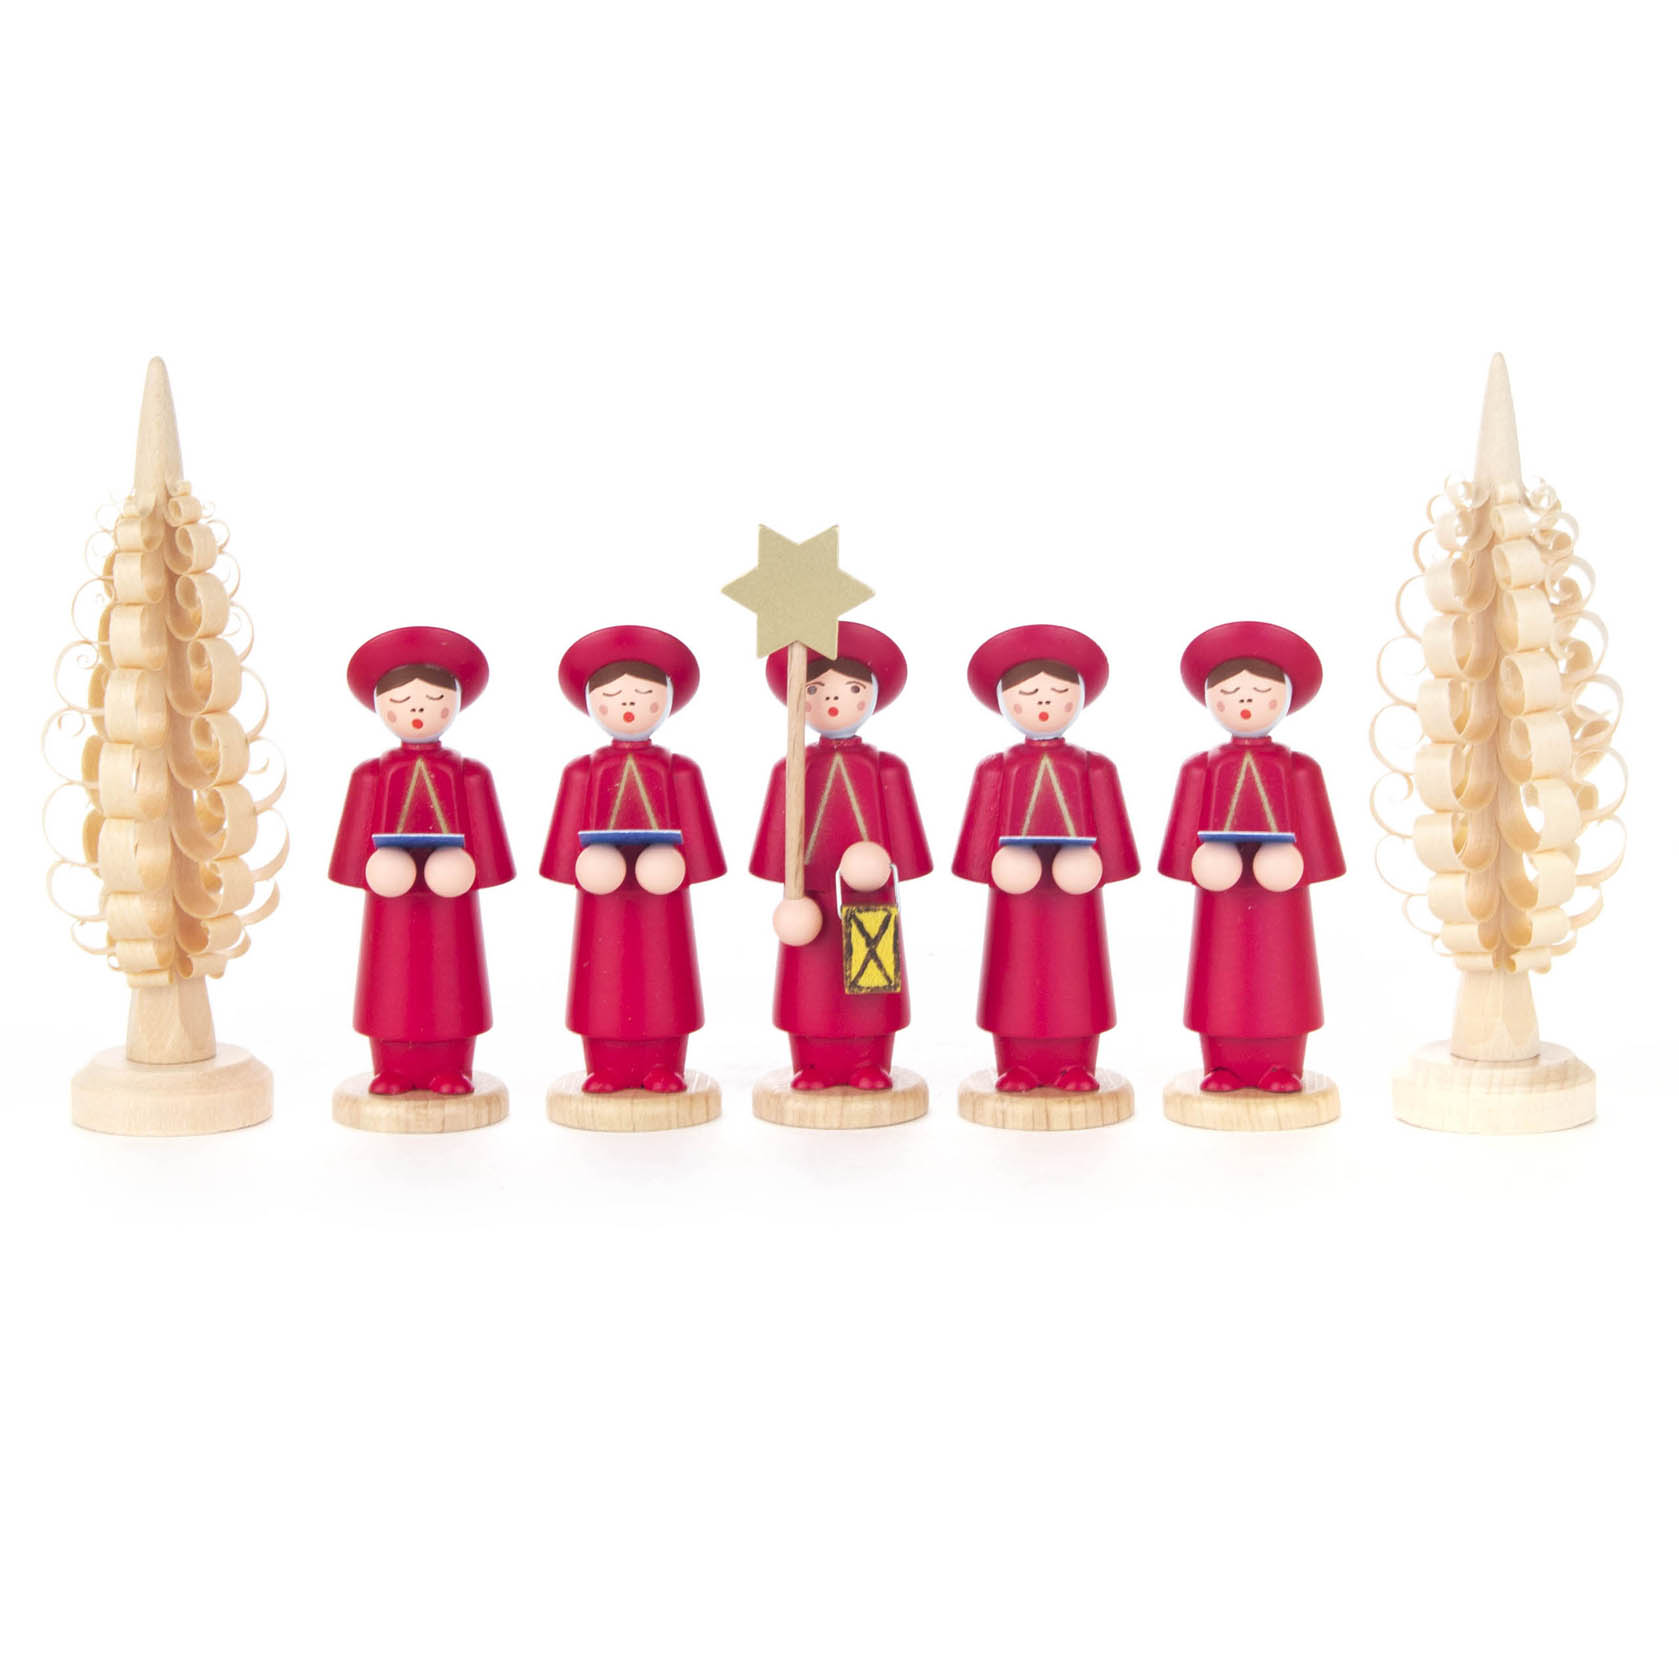 Kurrendefiguren rot mit Spanbäumchen (7) im Dregeno Online Shop günstig kaufen